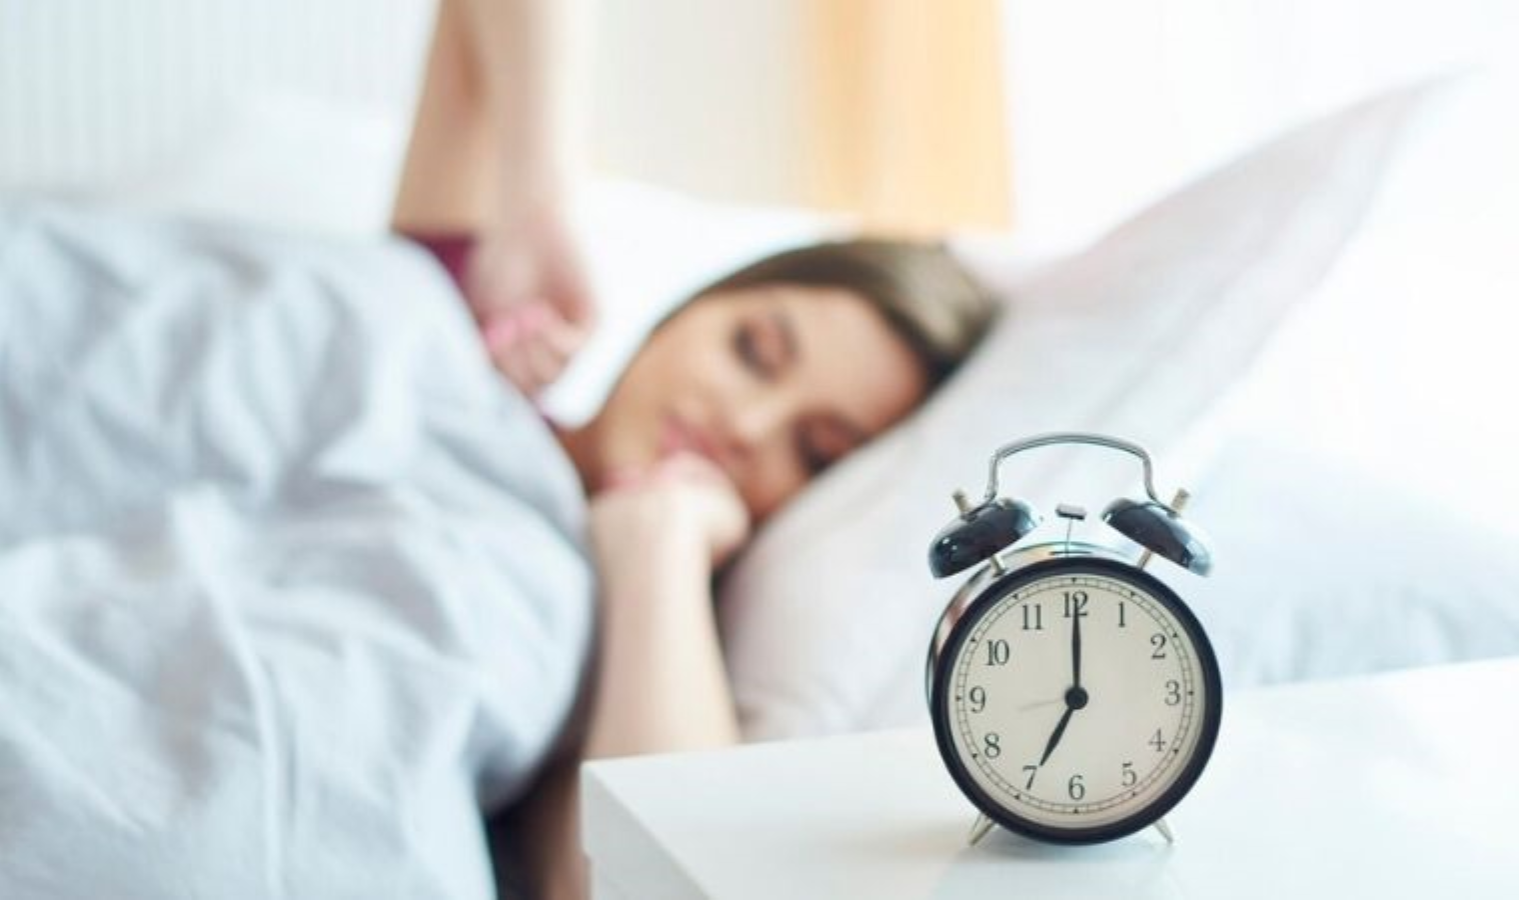 Her zaman uykusuz mu hissediyorsunuz? Daha kaliteli bir uyku için uzmanlardan altın değerinde 3 tavsiye... - Son Dakika Yaşam Haberleri | Cumhuriyet